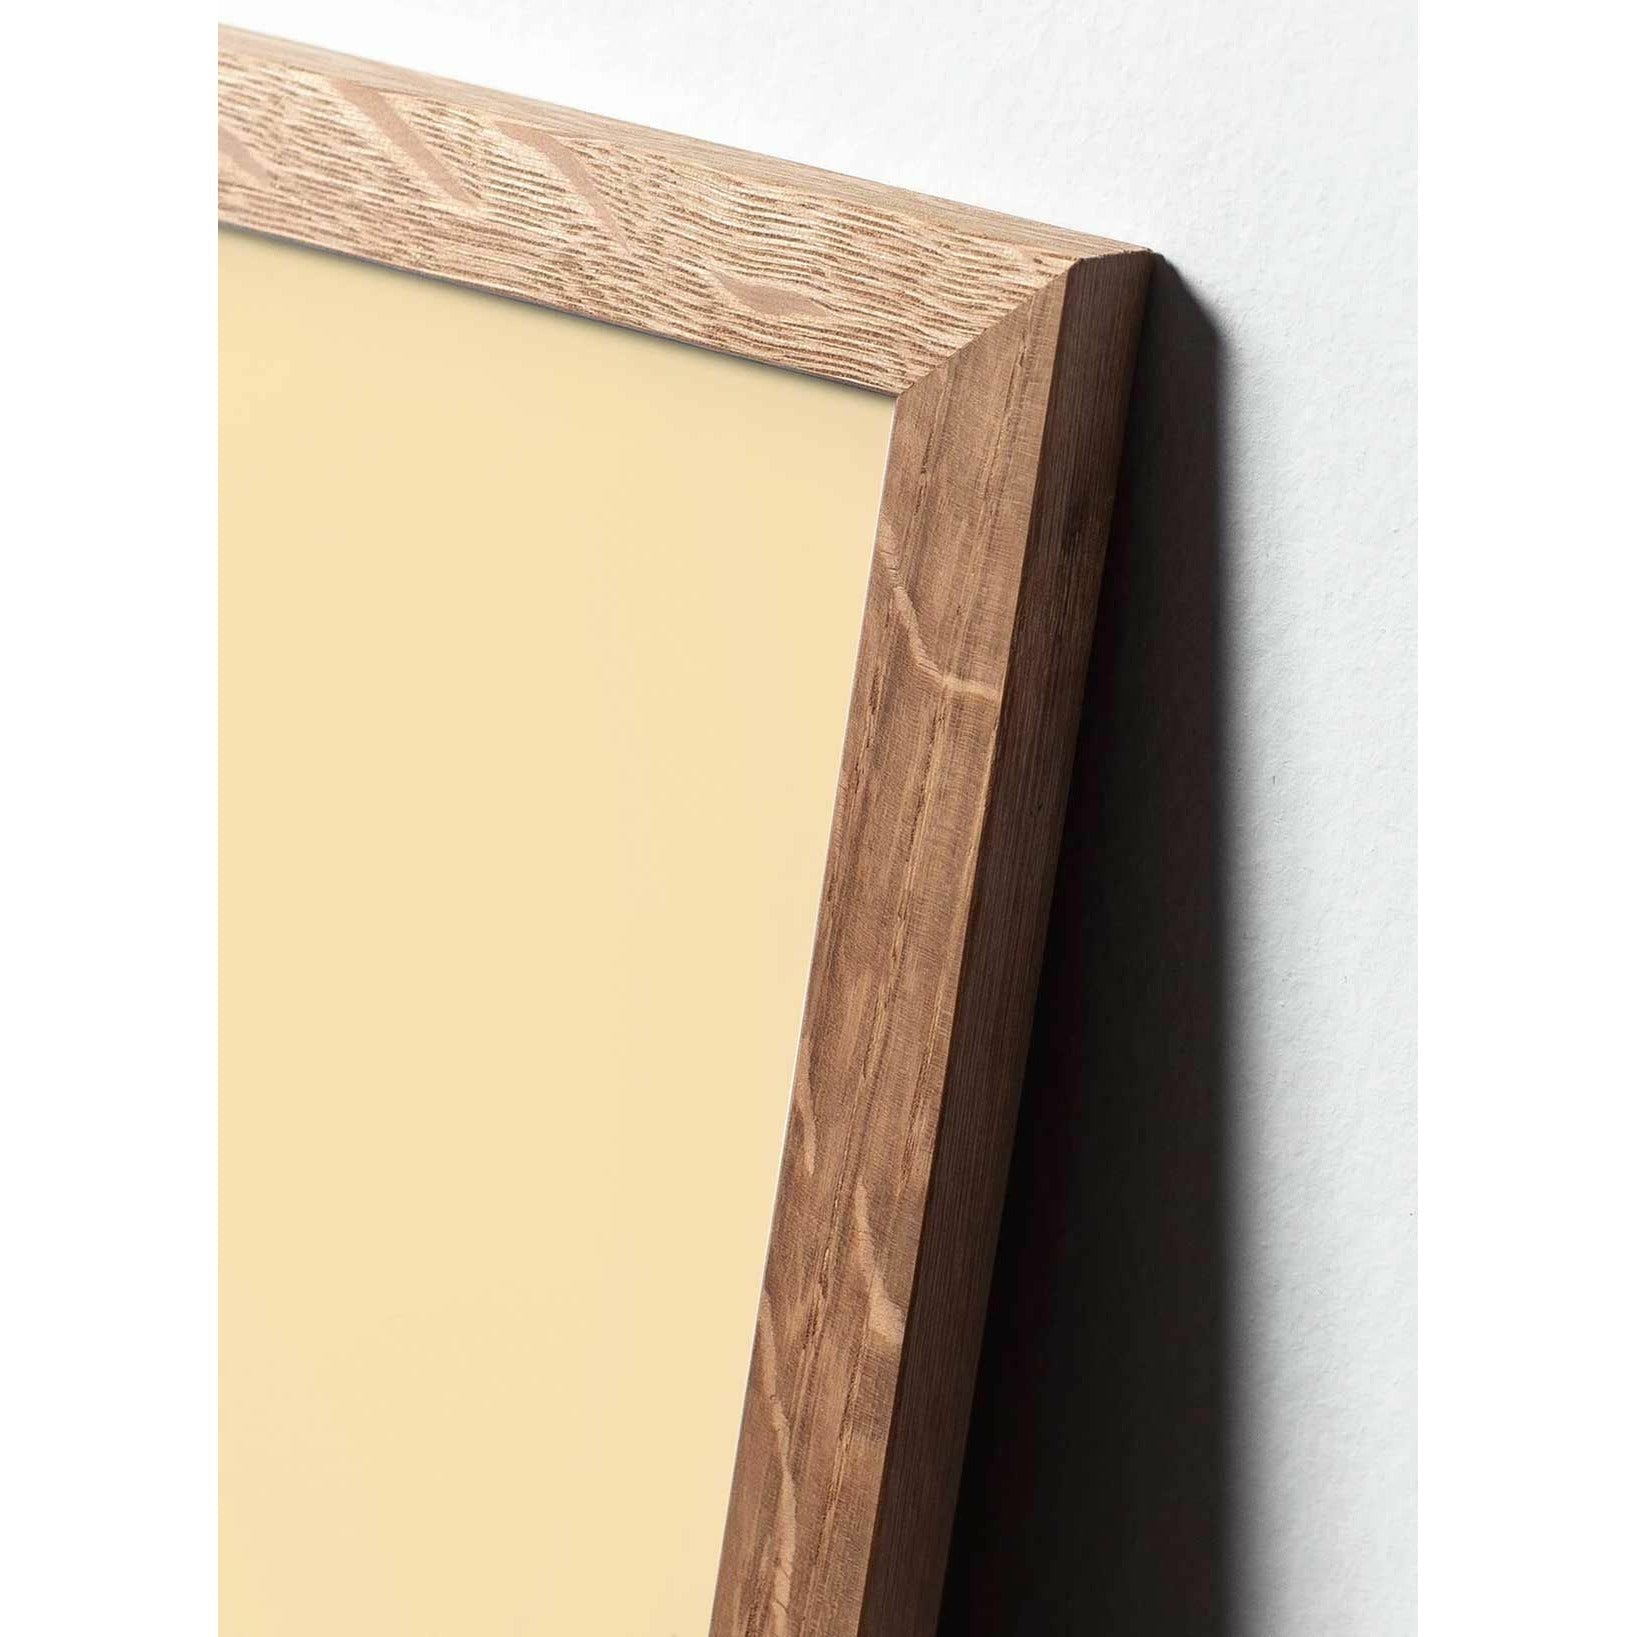 Plakát s labutí linií, lehký dřevěný rám A5, bílé pozadí